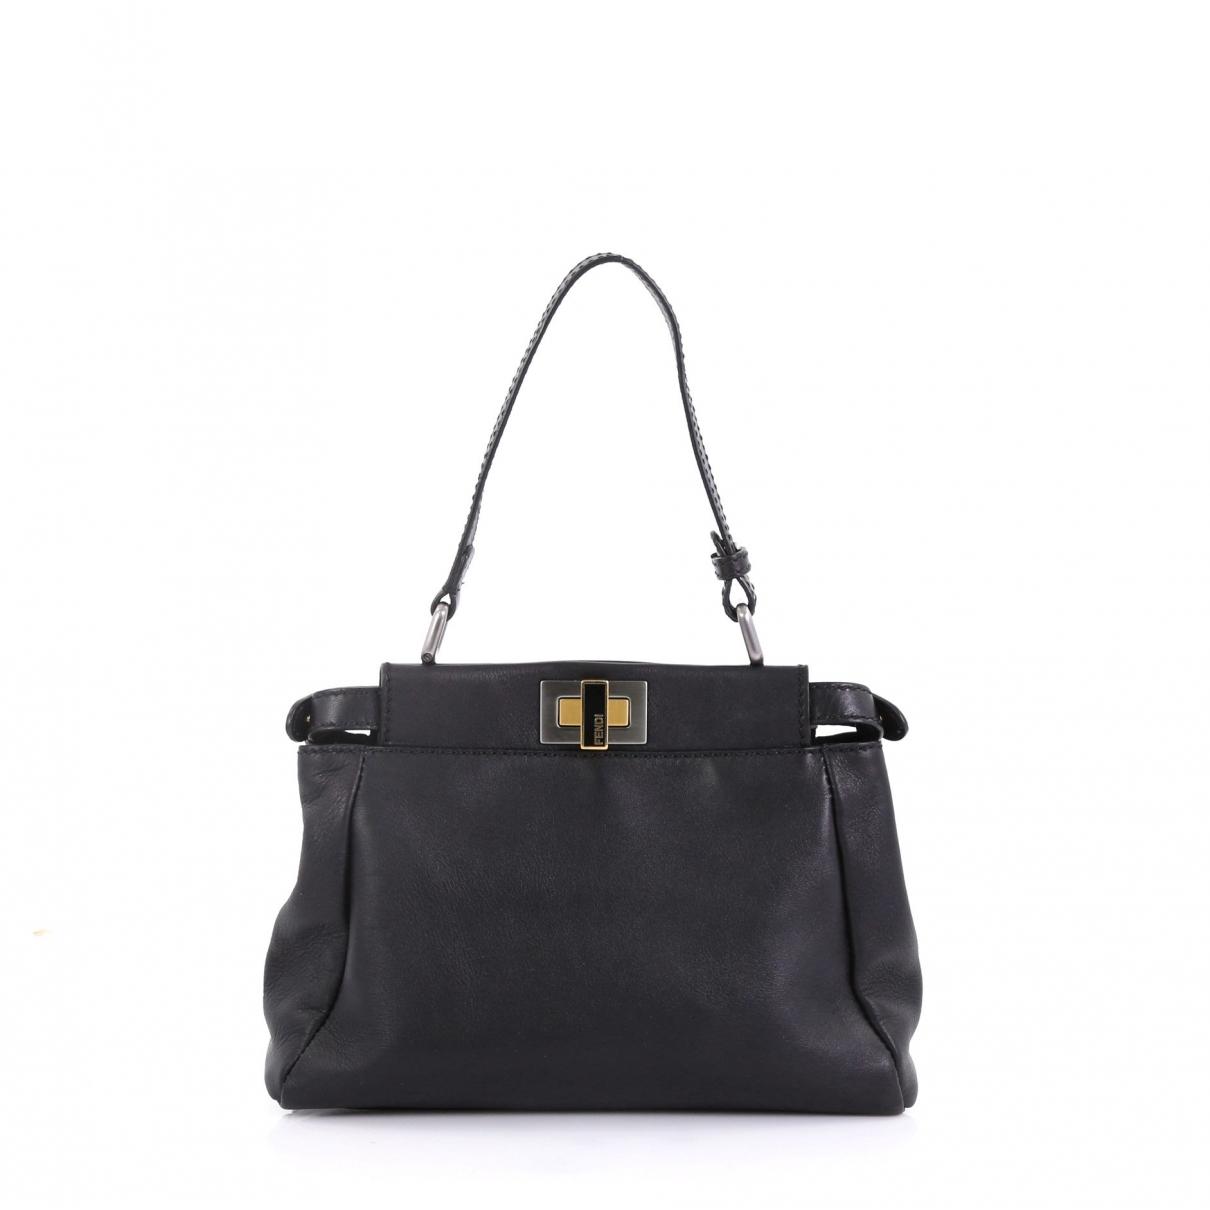 Fendi Pre-owned Peekaboo Black Leather Handbags in Black - Lyst